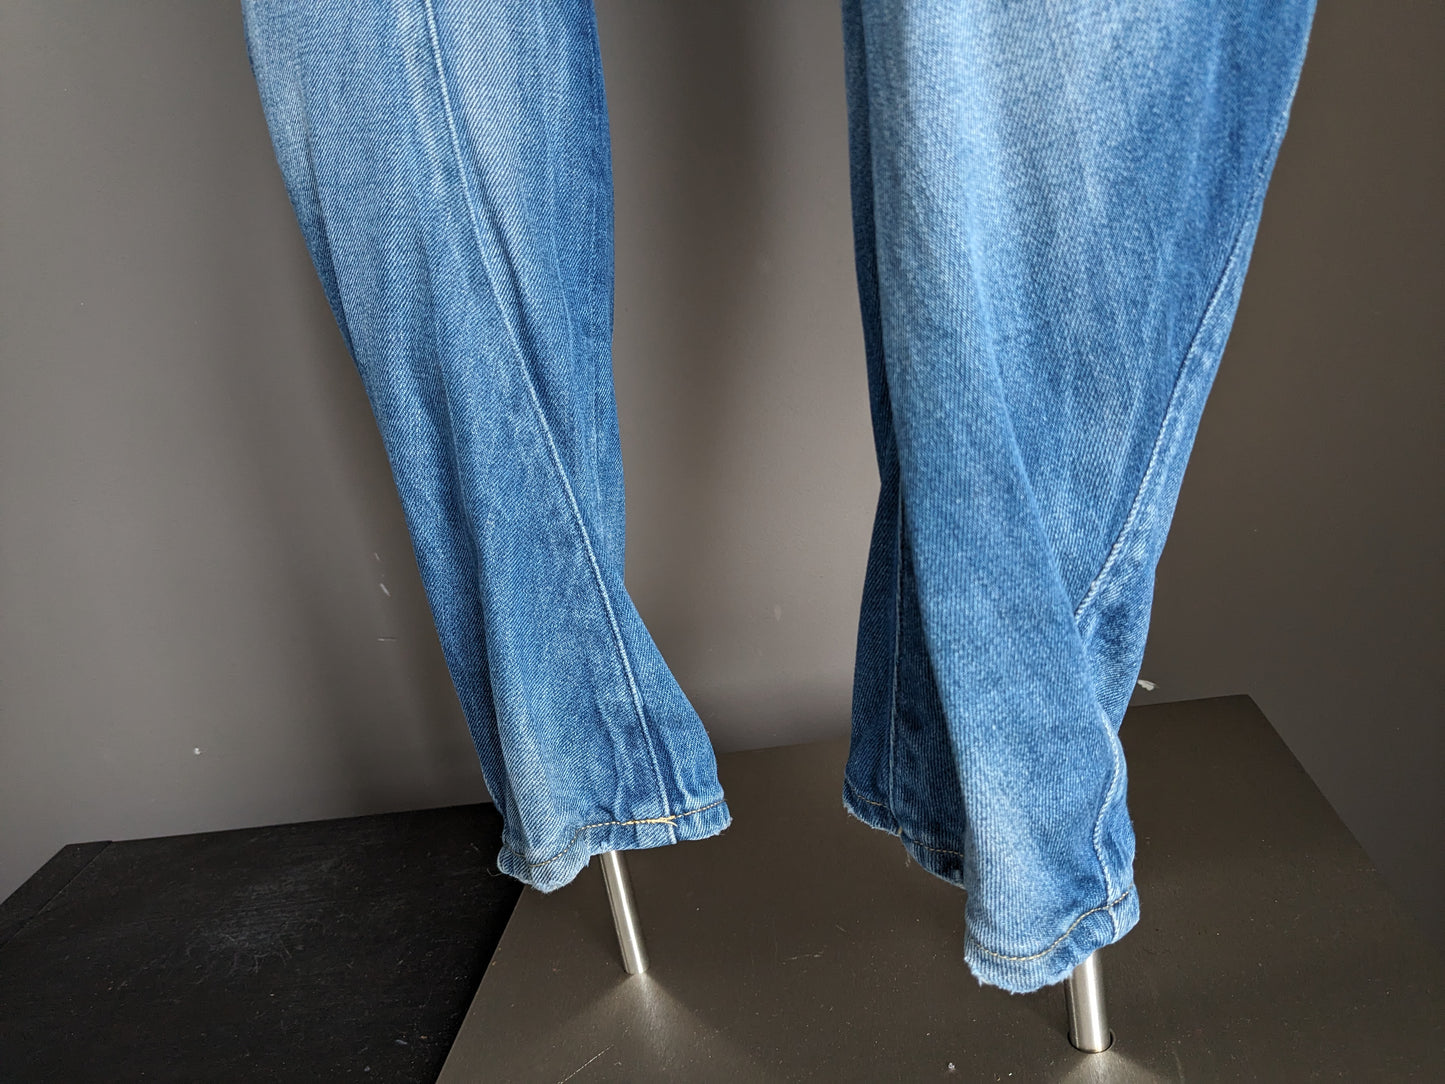 Jeans bruts GSTAR. Couleur bleu clair. Taille W33 - L32.